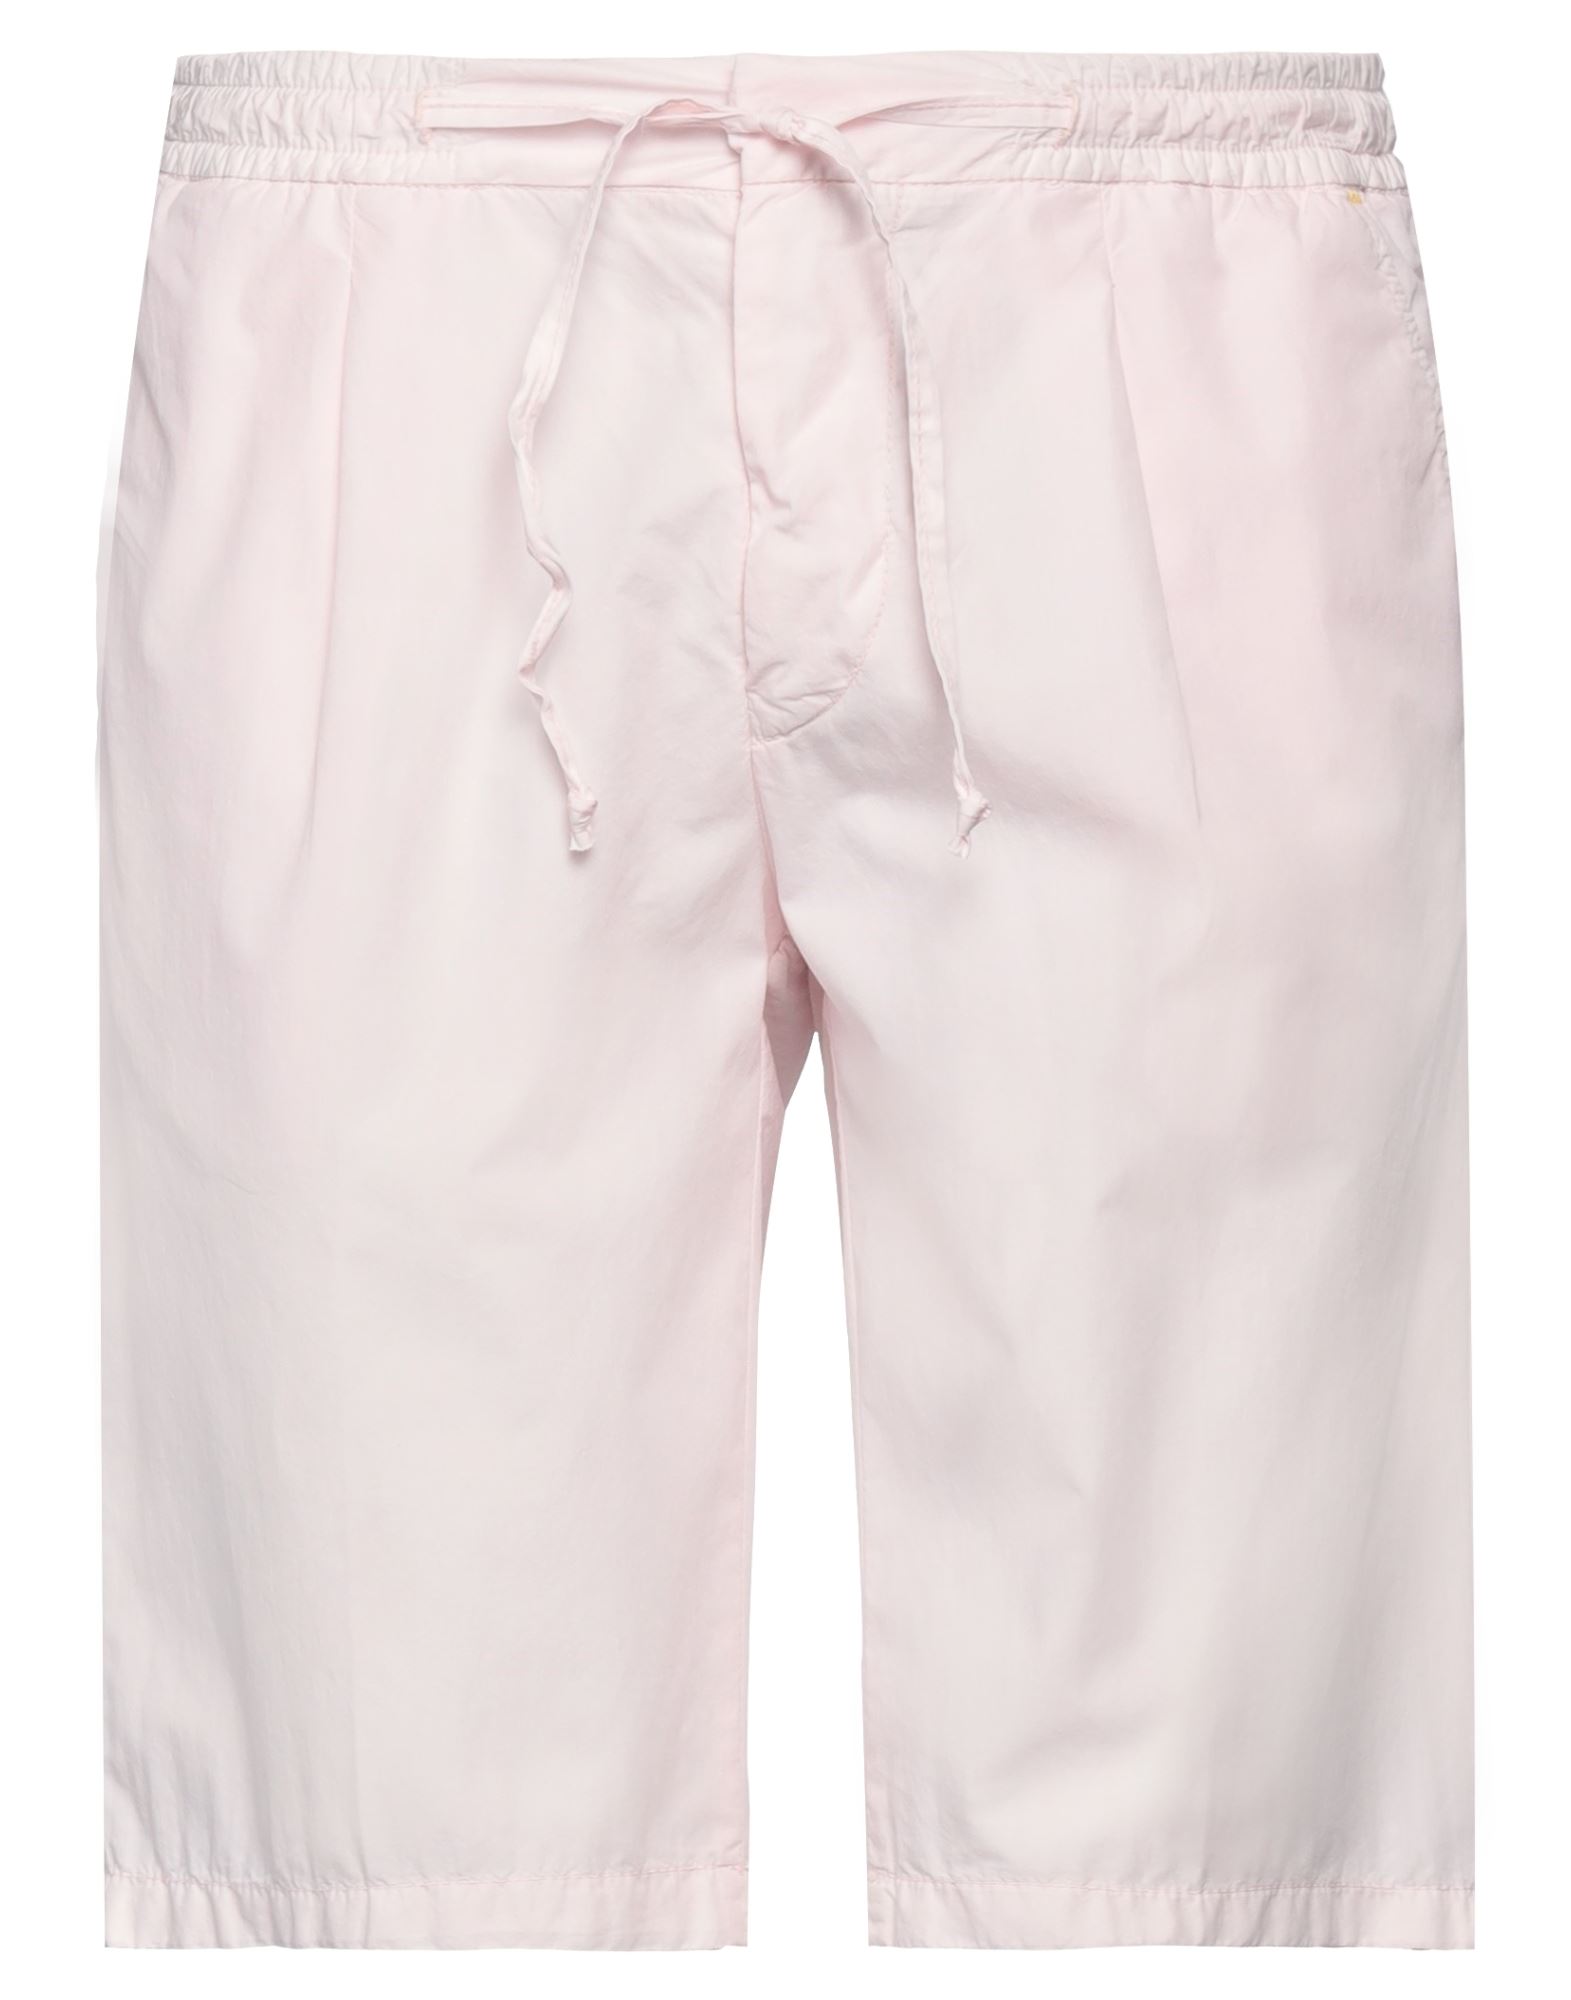 Manuel Ritz Man Shorts & Bermuda Shorts Light Pink Size 34 Cotton, Polyamide